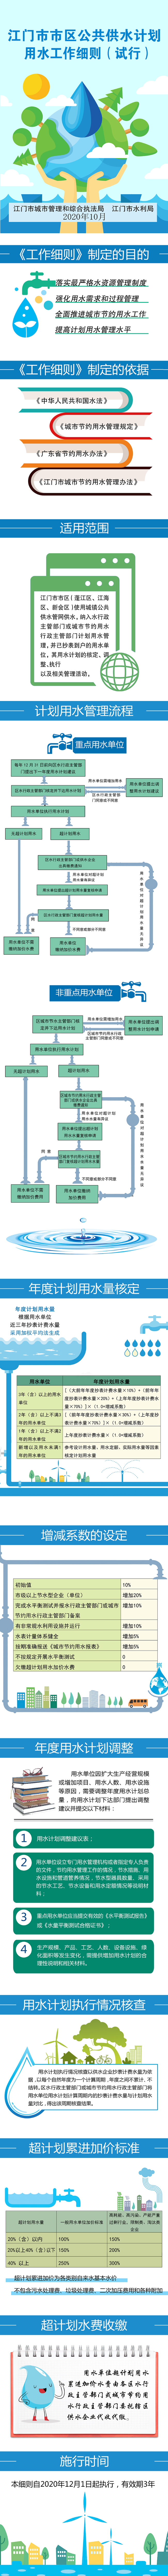 《江门市市区公共供水计划用水工作细则（试行）》政策图解.jpg